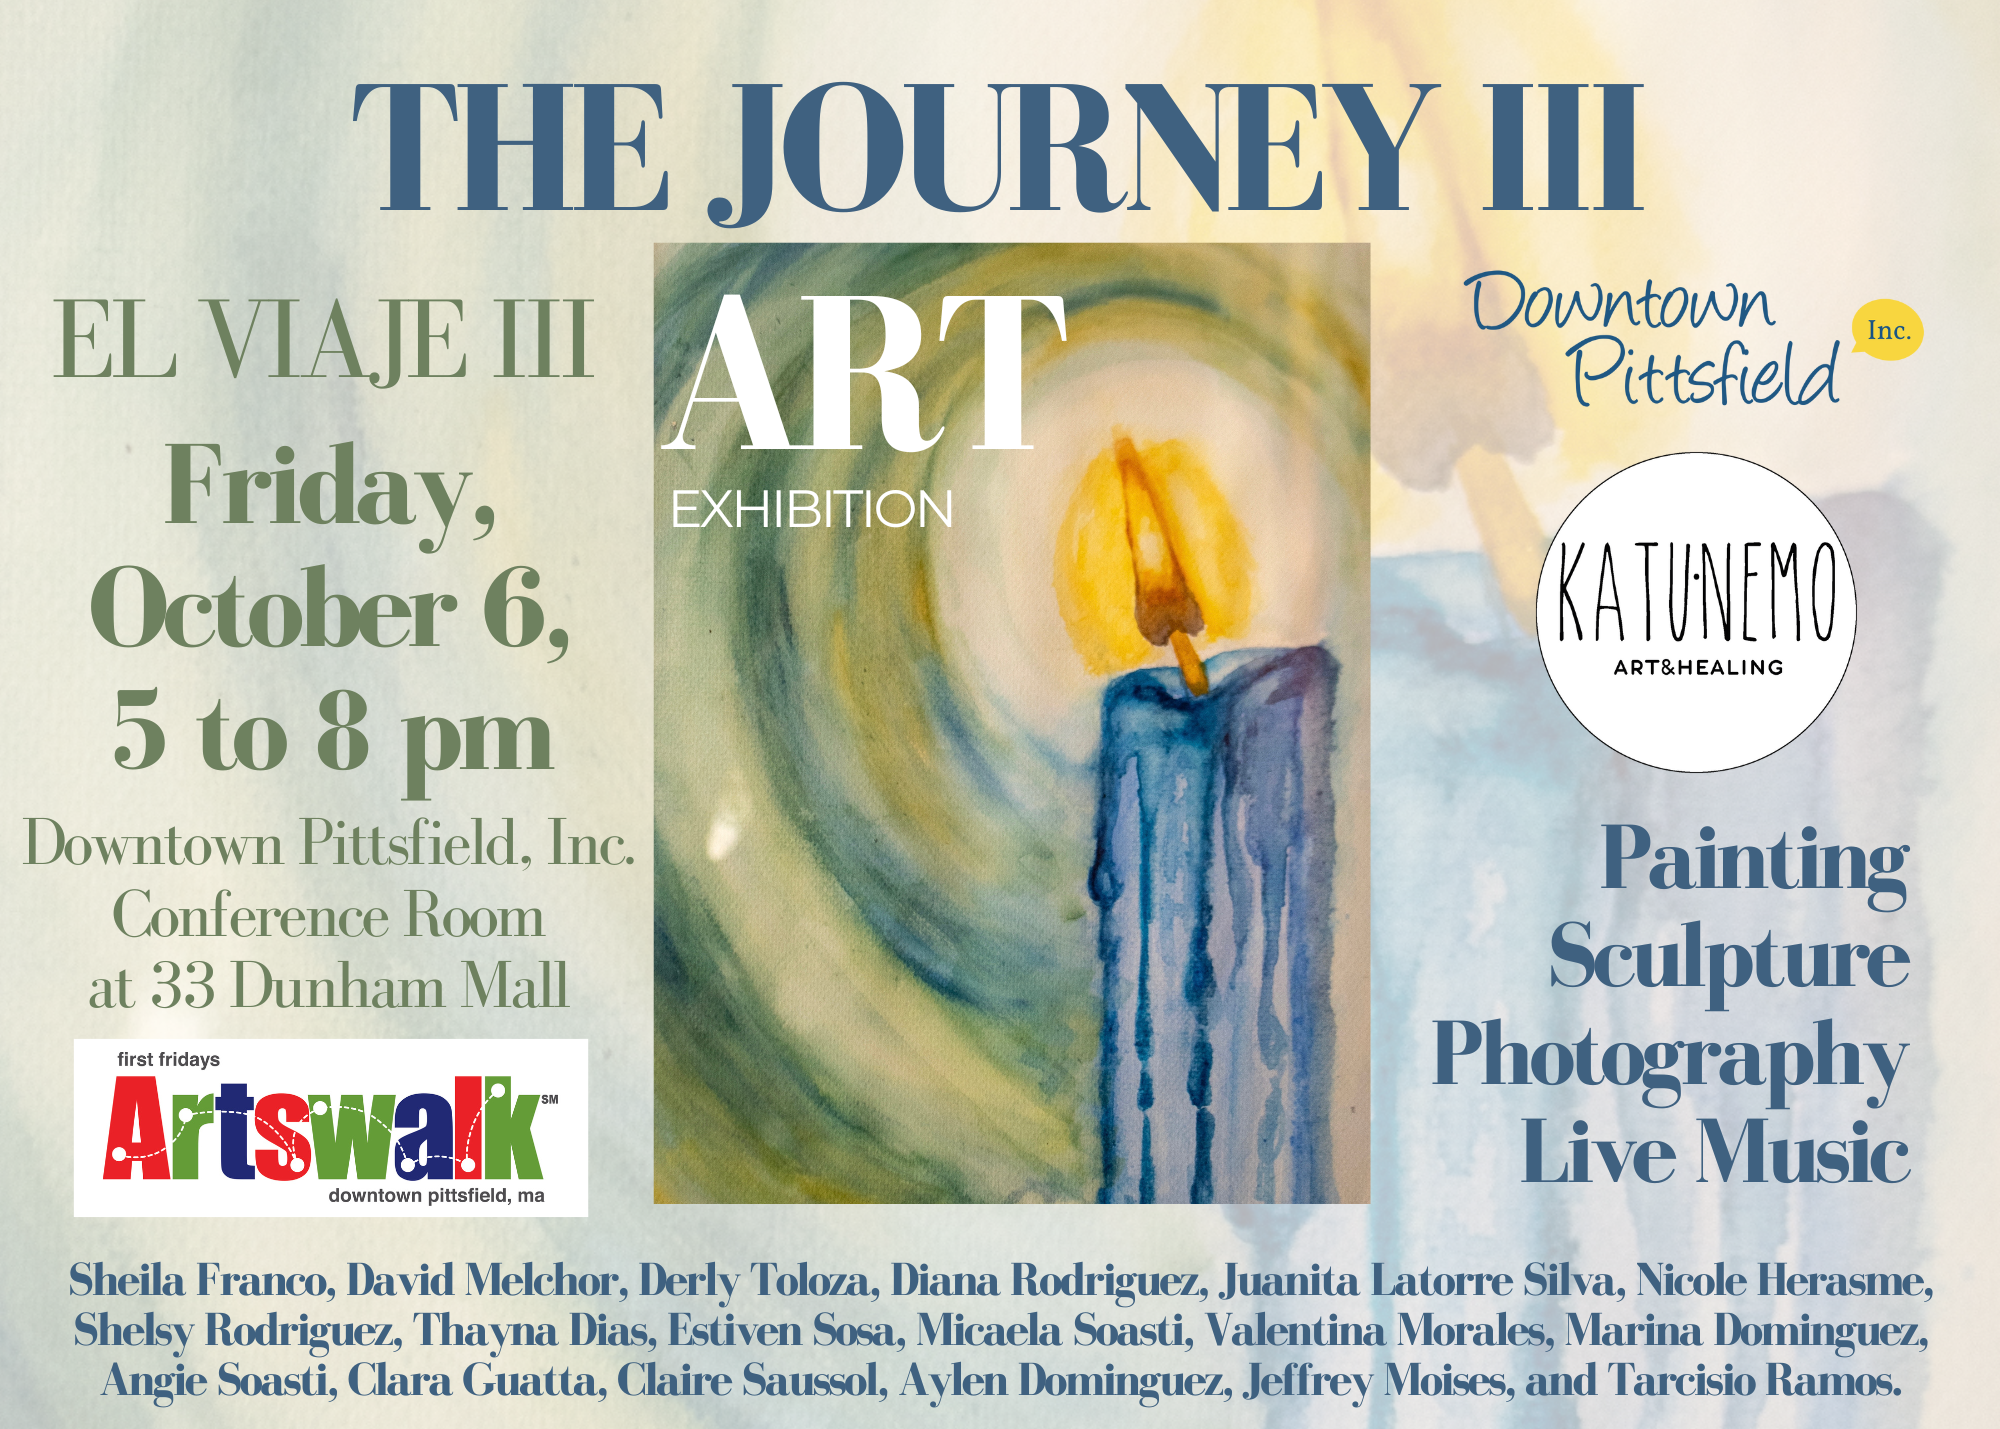 “The Journey III” Art Exhibition (“El viaje III”)